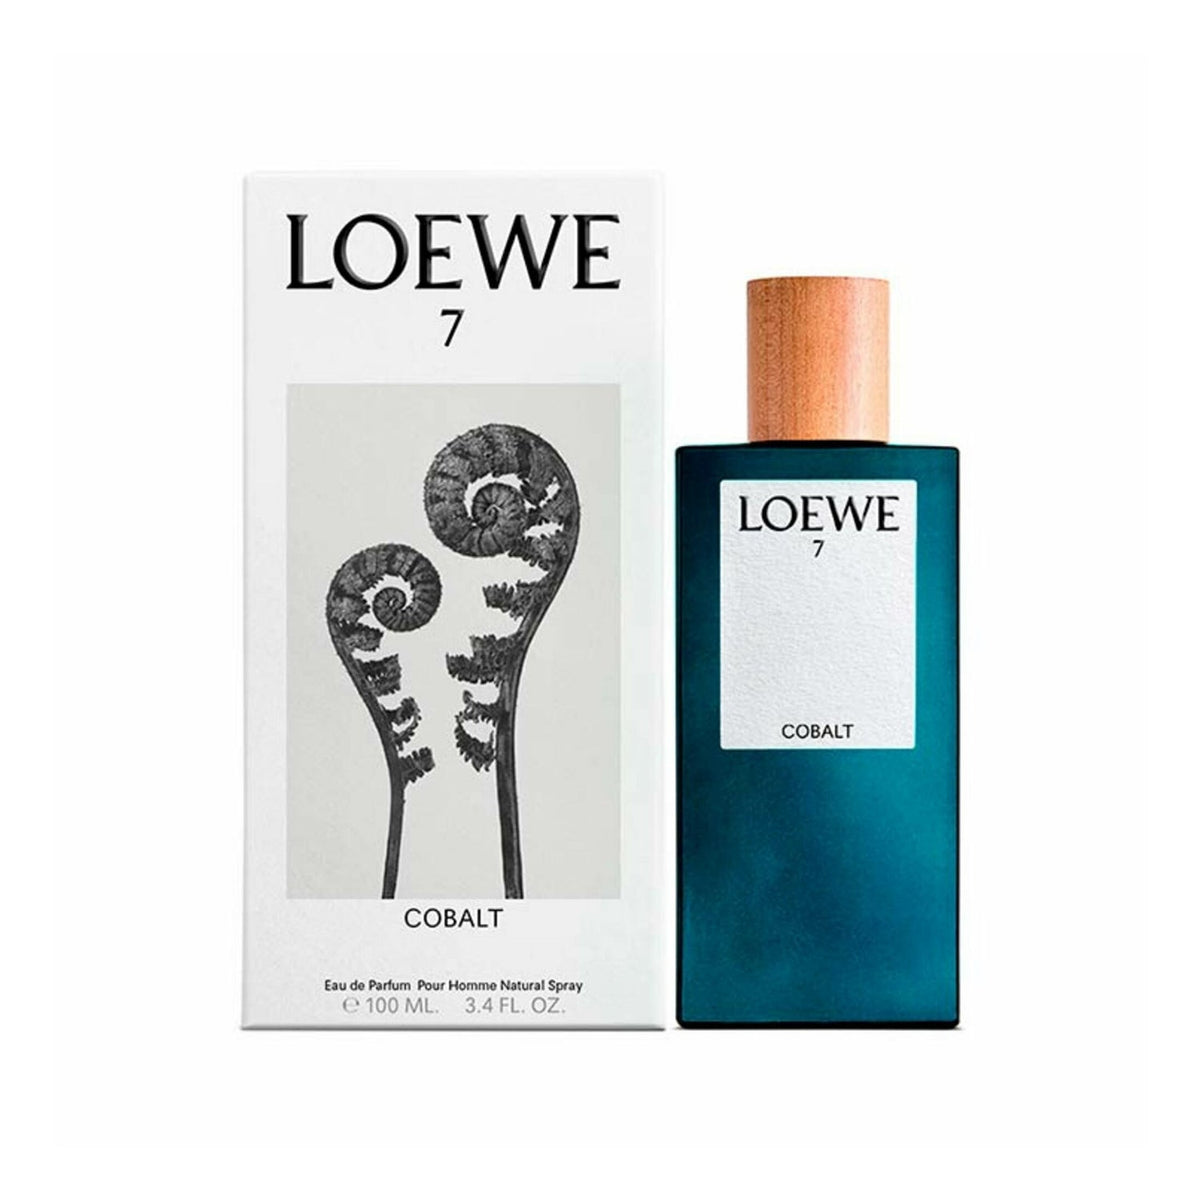 Loewe 7 Cobalt Eau De Parfum